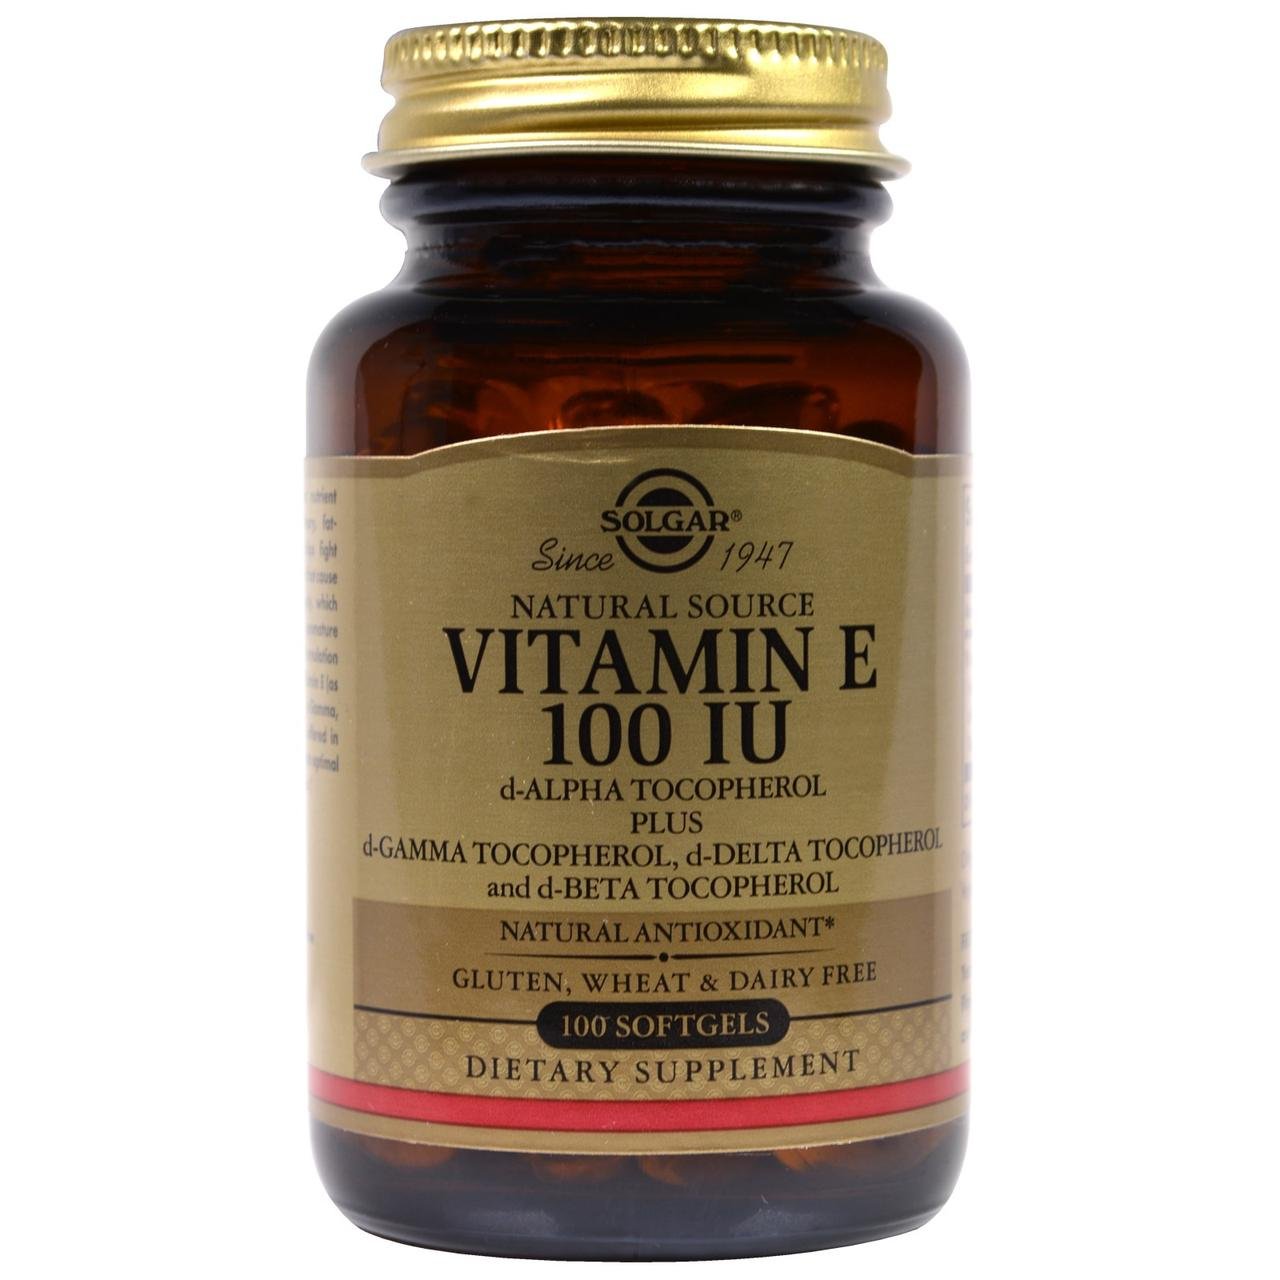 Solgar Natural Vitamin E 100 IU 100 Softgels,  мл, Solgar. Витамин E. Поддержание здоровья Антиоксидантные свойства 